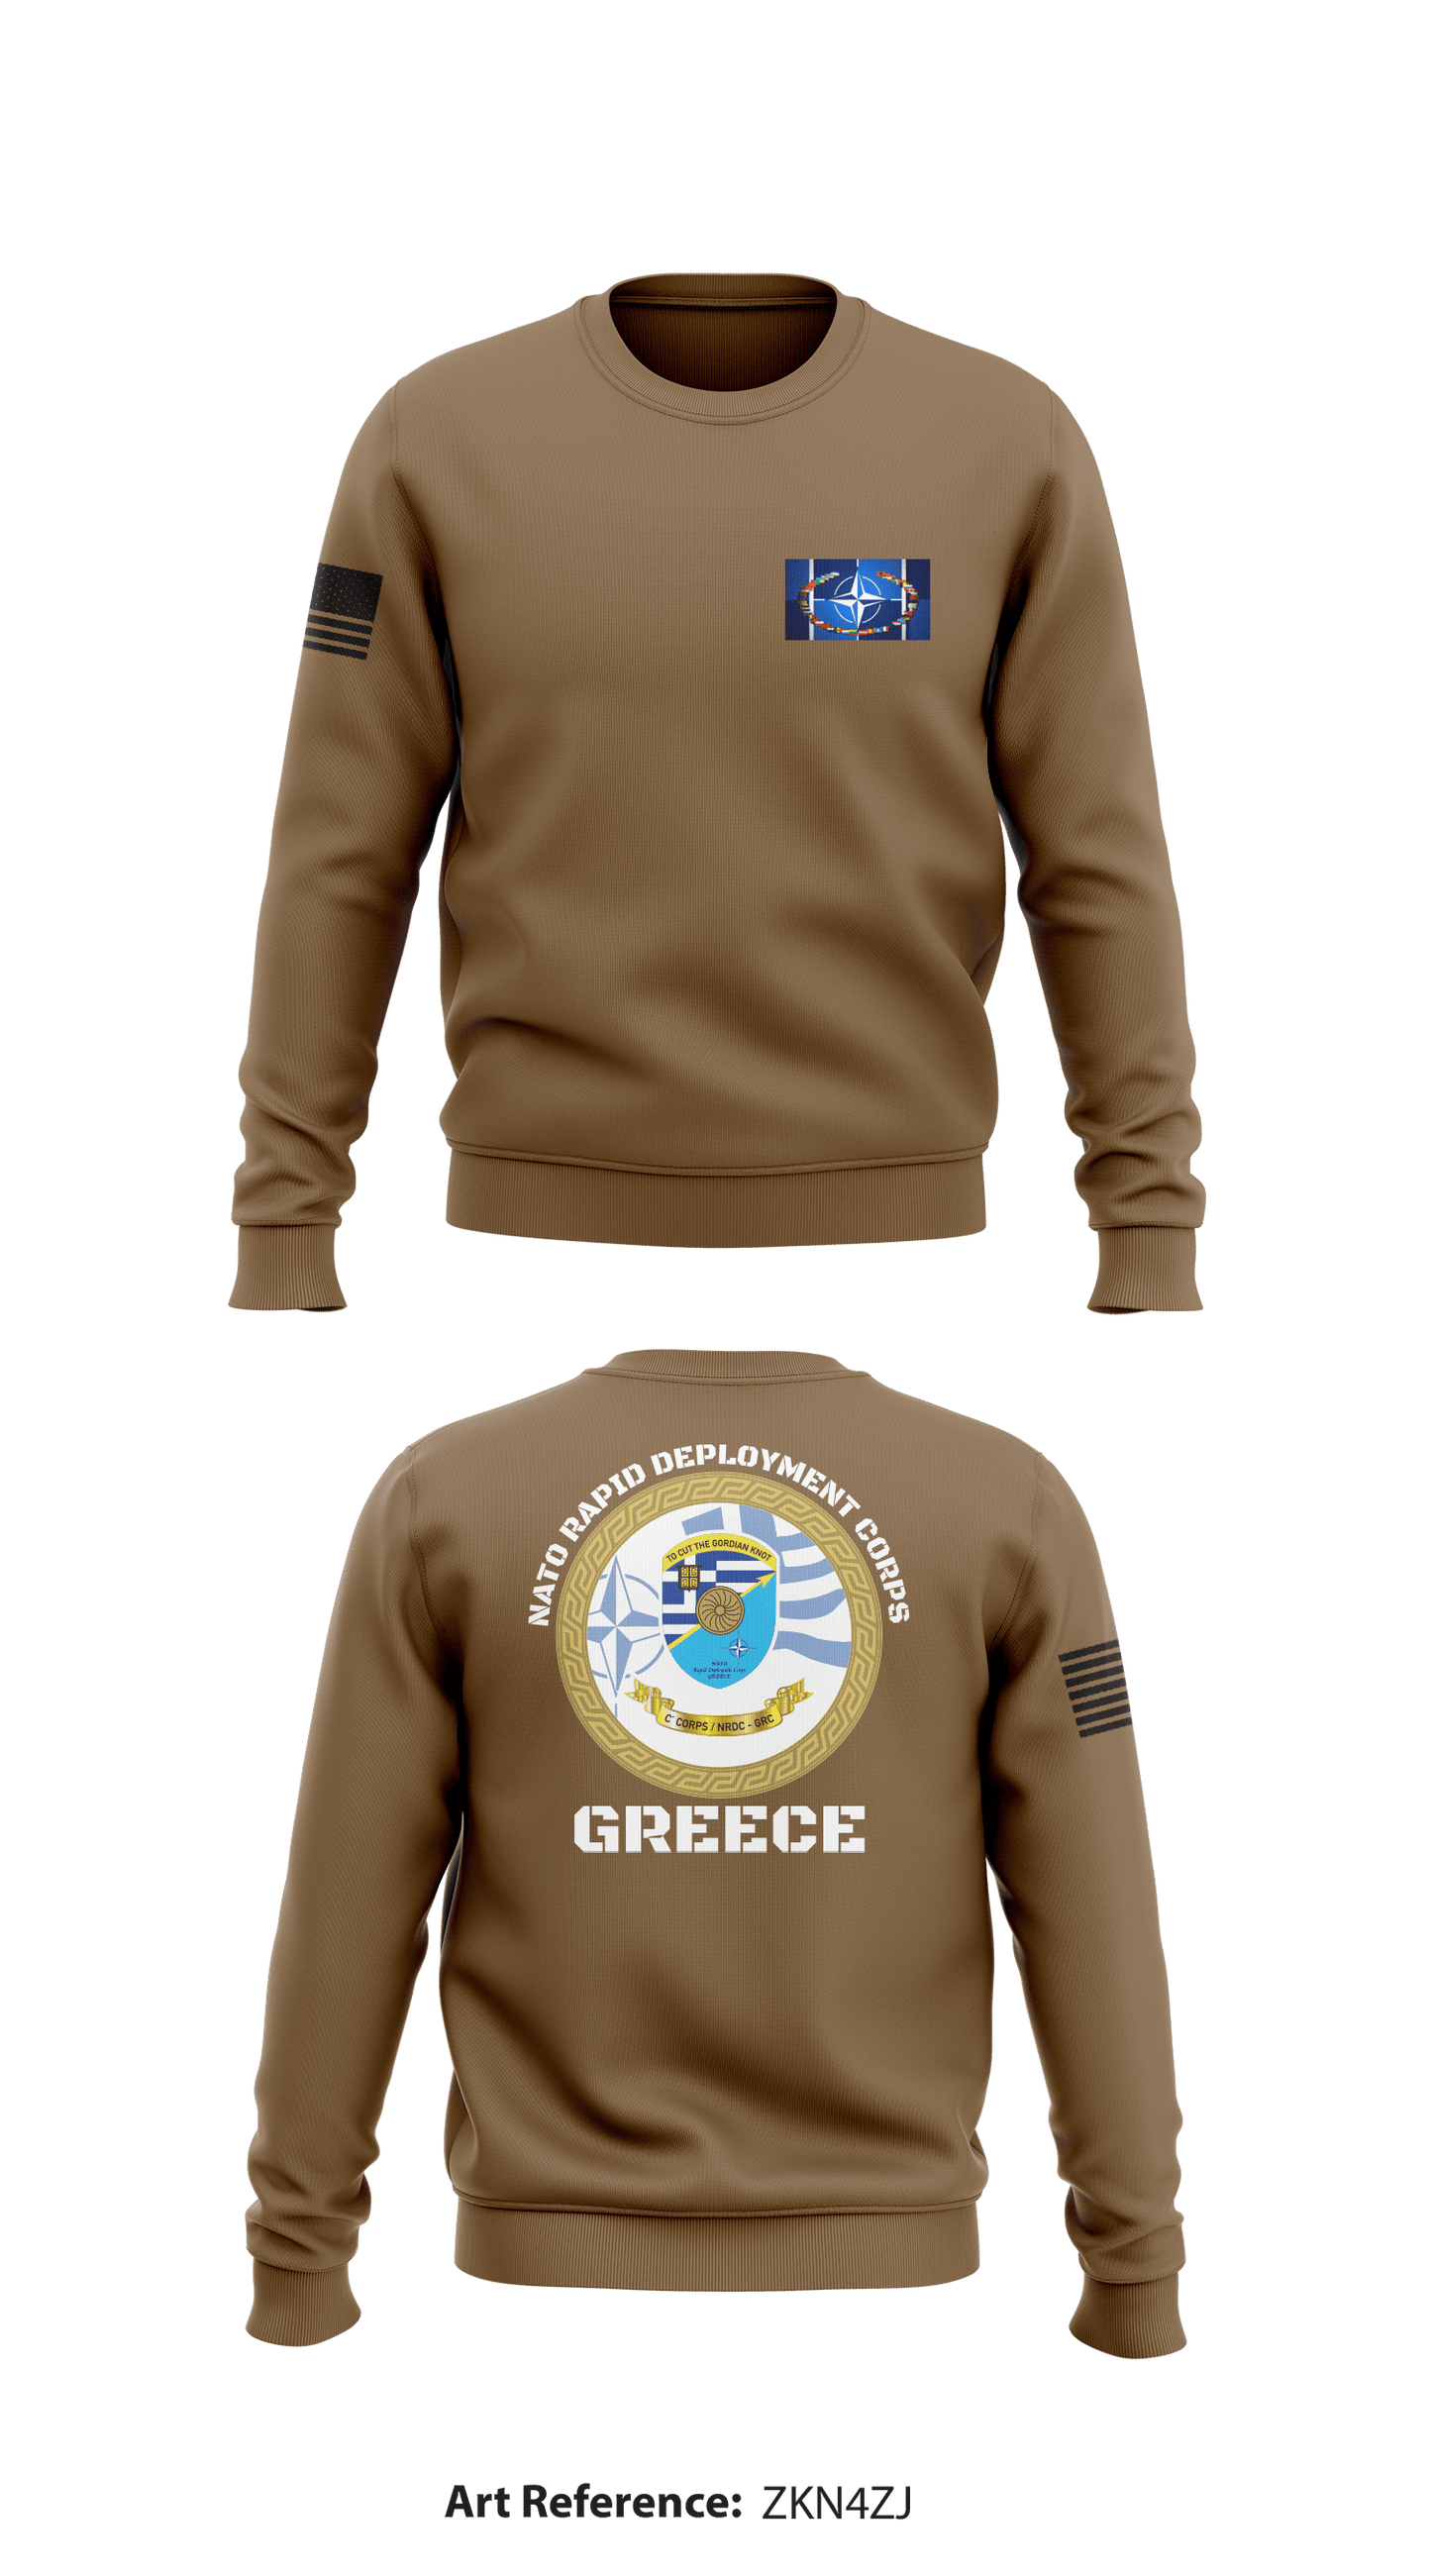 NATO Rapid Deployment Corp- Greece Store 1 Core Men's Crewneck Performance Sweatshirt - zkN4zj